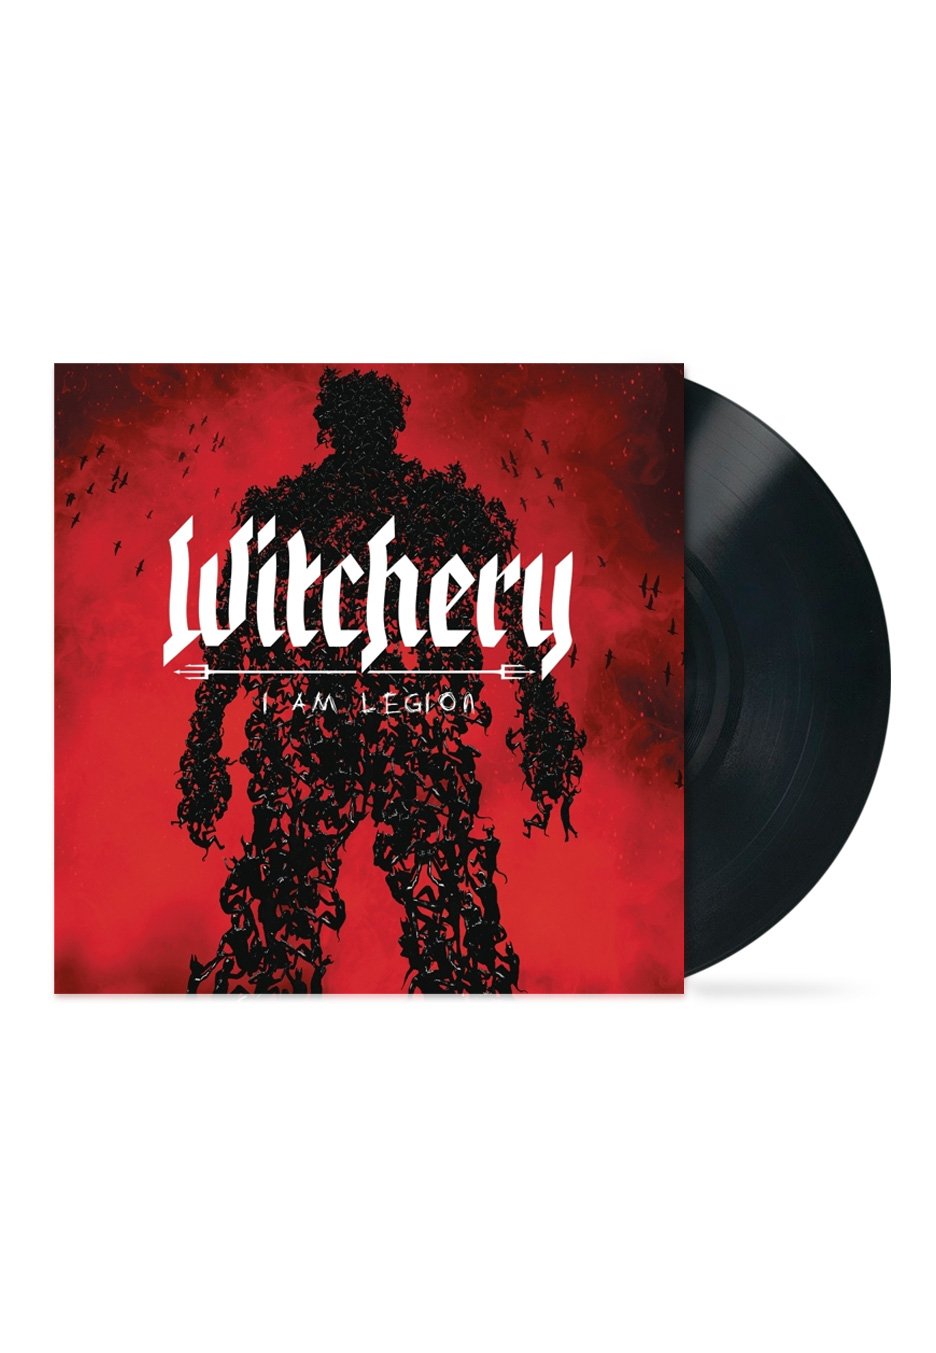 Witchery - I Am Legion - Vinyl